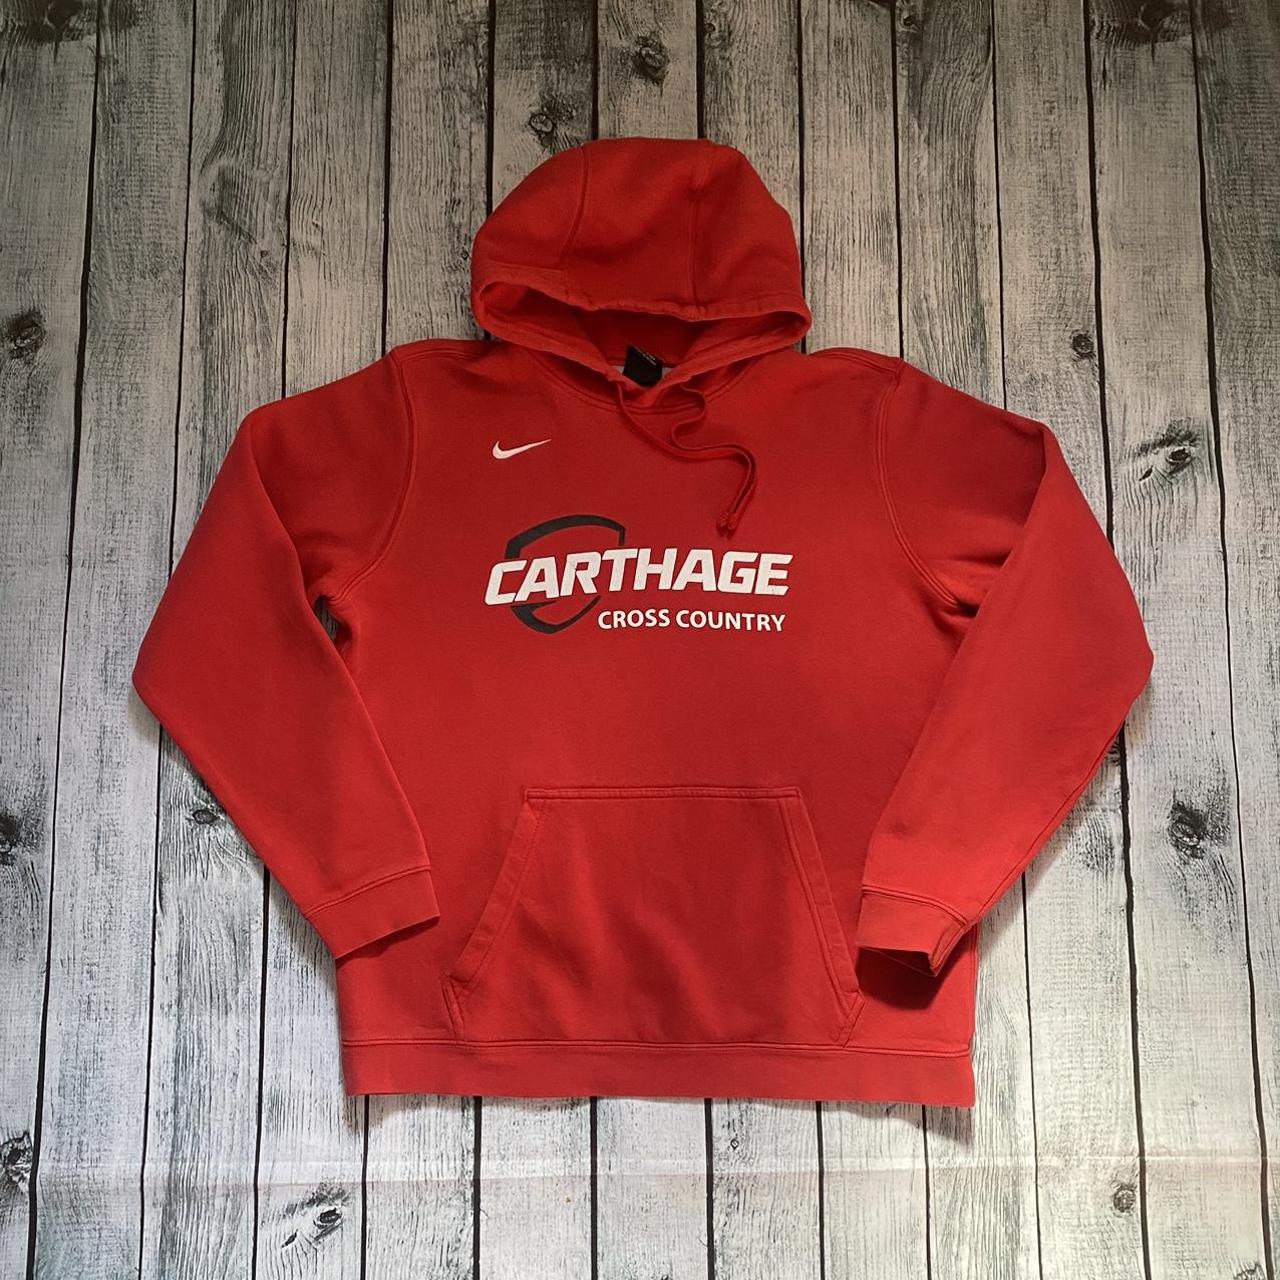 Nike Carthage Cross Country Red hoodie / sweatshirt/... - Depop